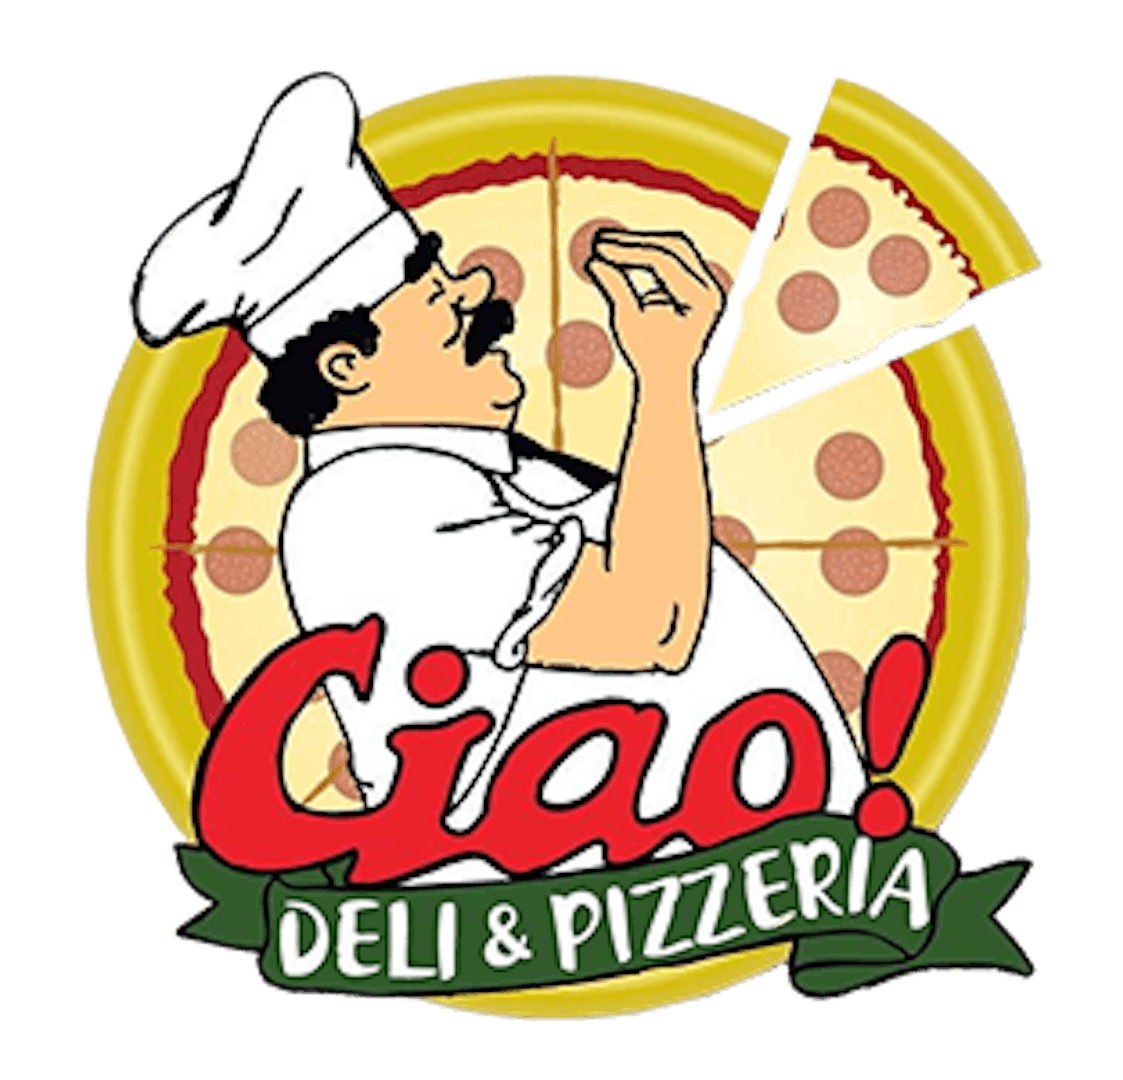 Ciao! Deli & Pizzeria